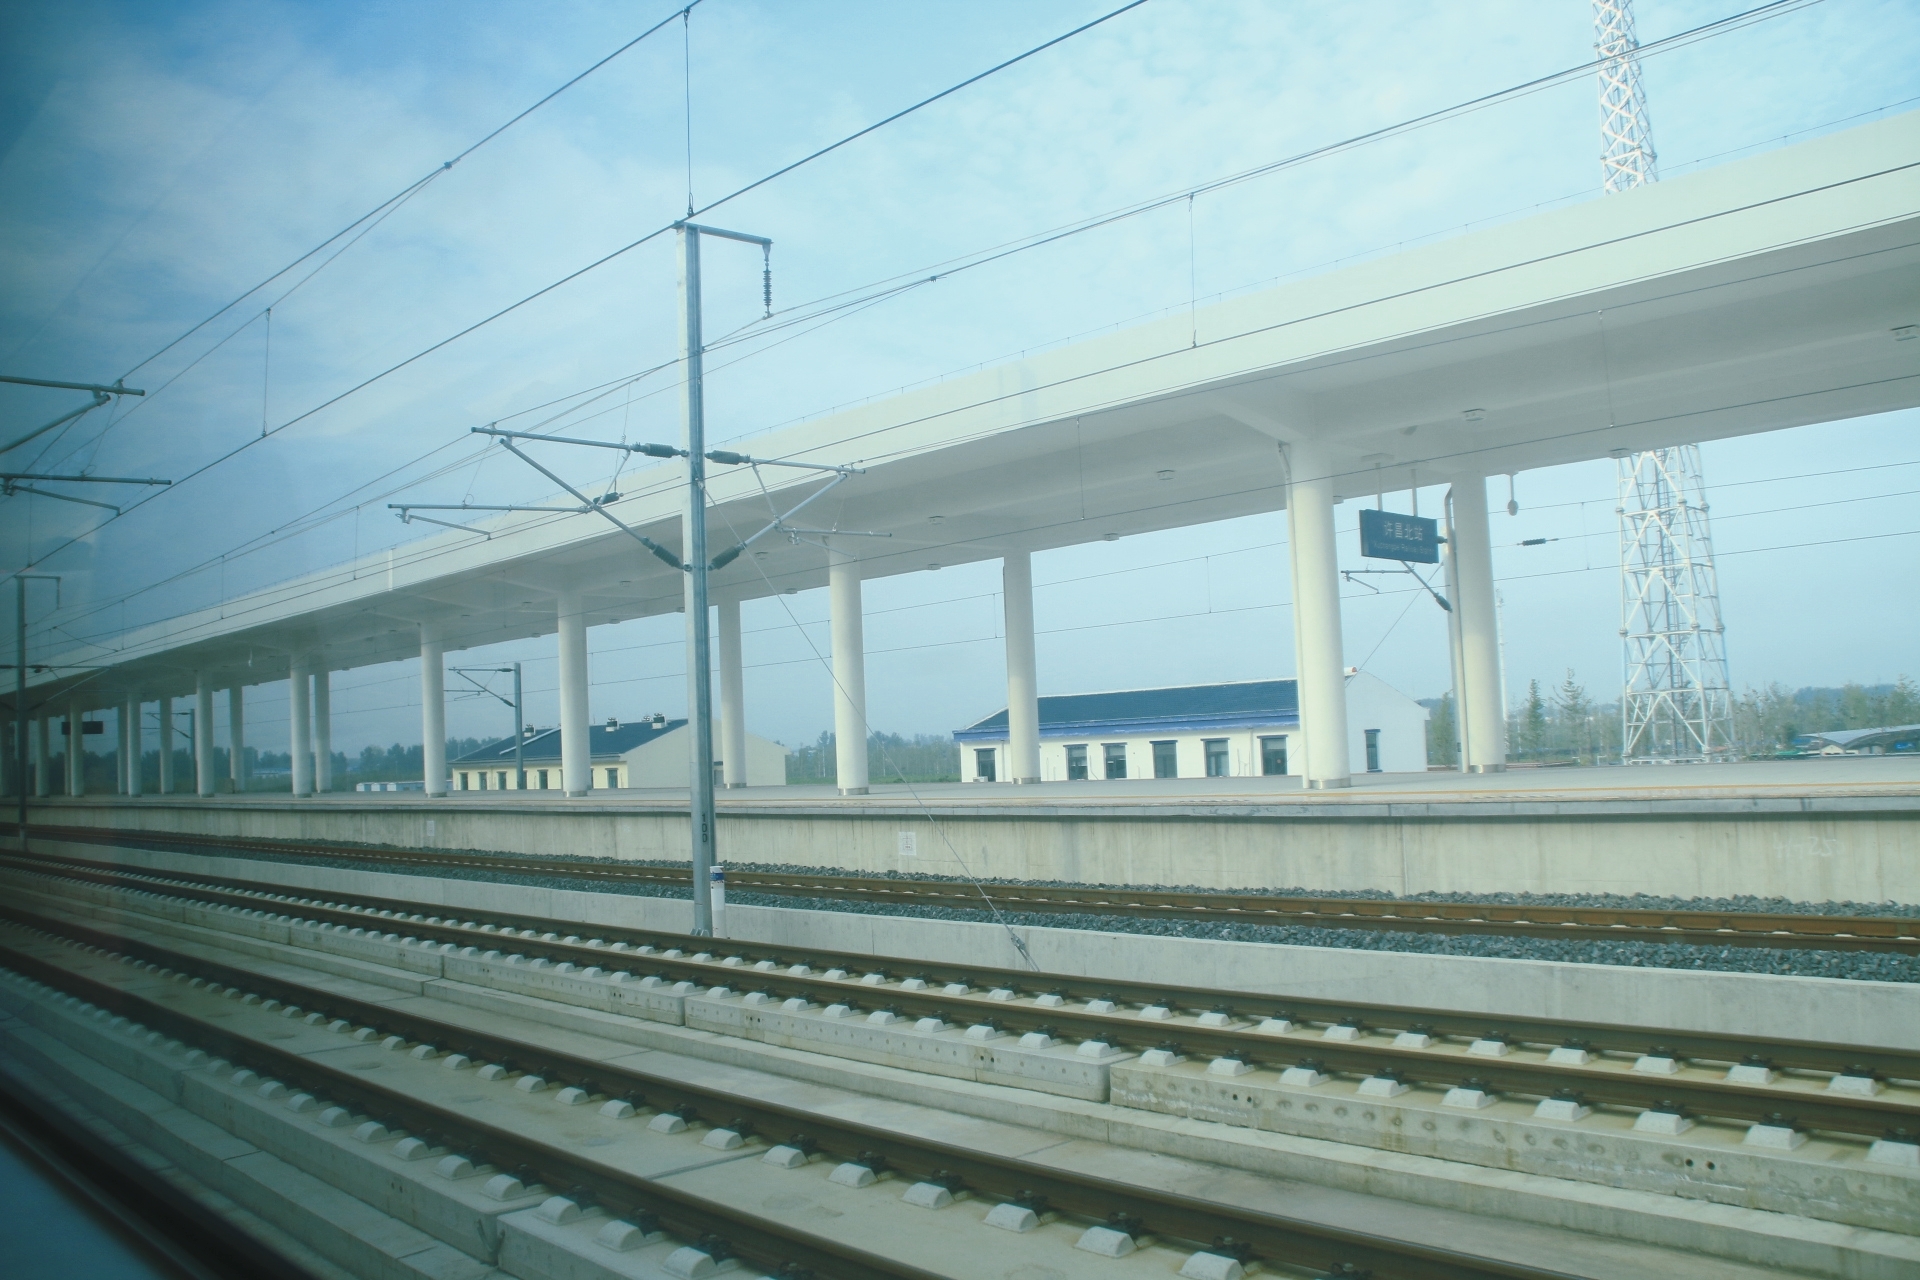 芜湖轨道交通2号线一期开通运营 正式进入双线换乘时代